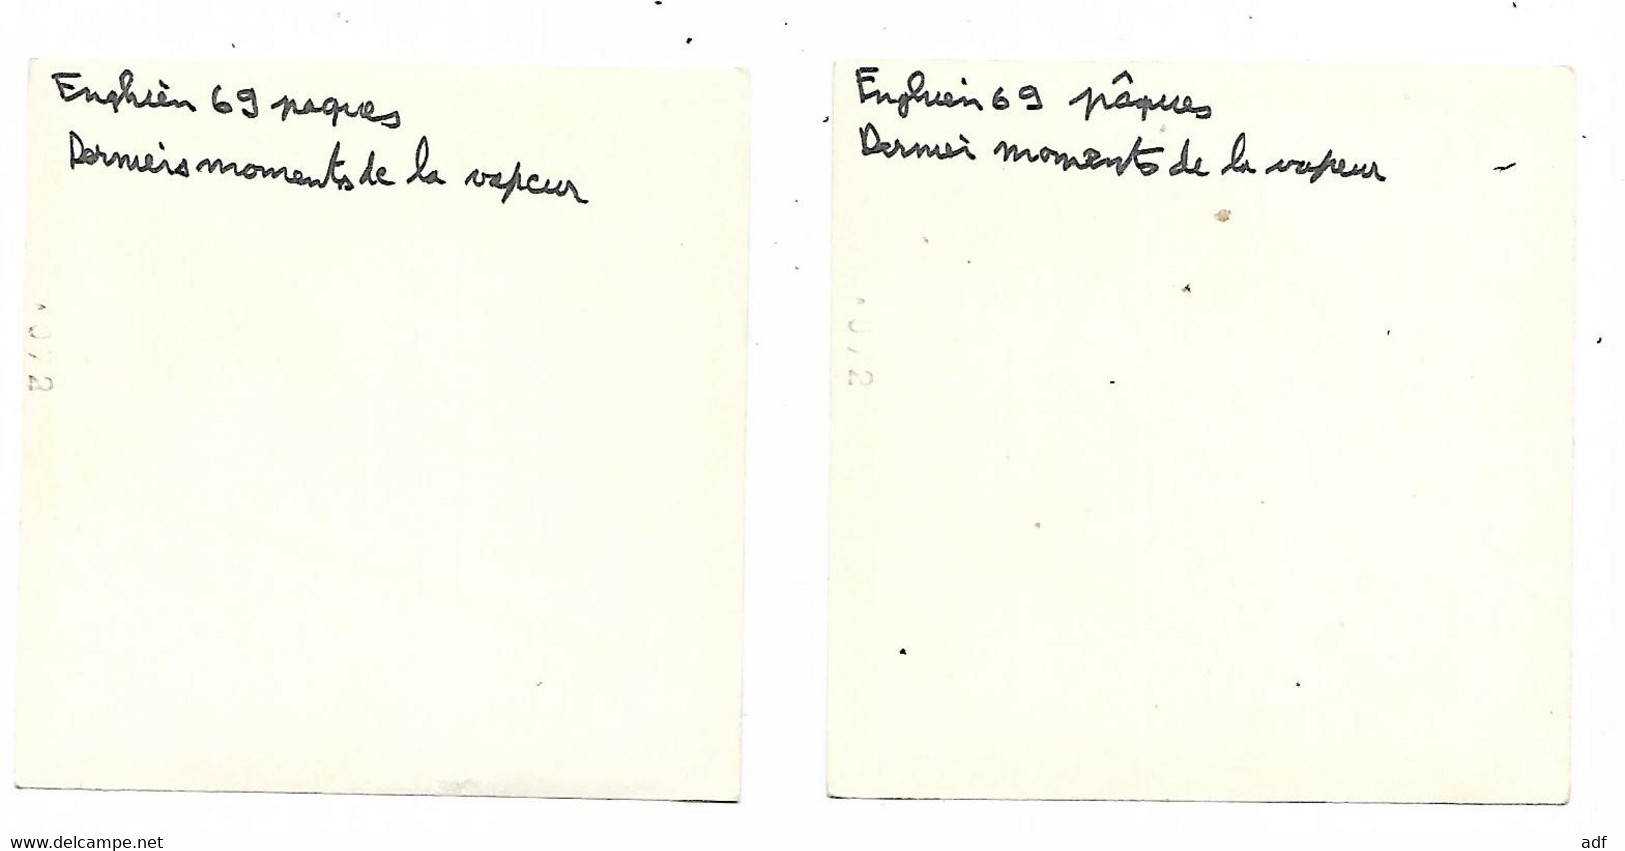 LOT 2 ANCIENNES PHOTO ENGHIEN ( EDINGEN ), TRAIN, LOCOMOTIVE, 1969, " DERNIERS MOMENTS DE LA VAPEUR ", HAINAUT, BELGIQUE - Edingen